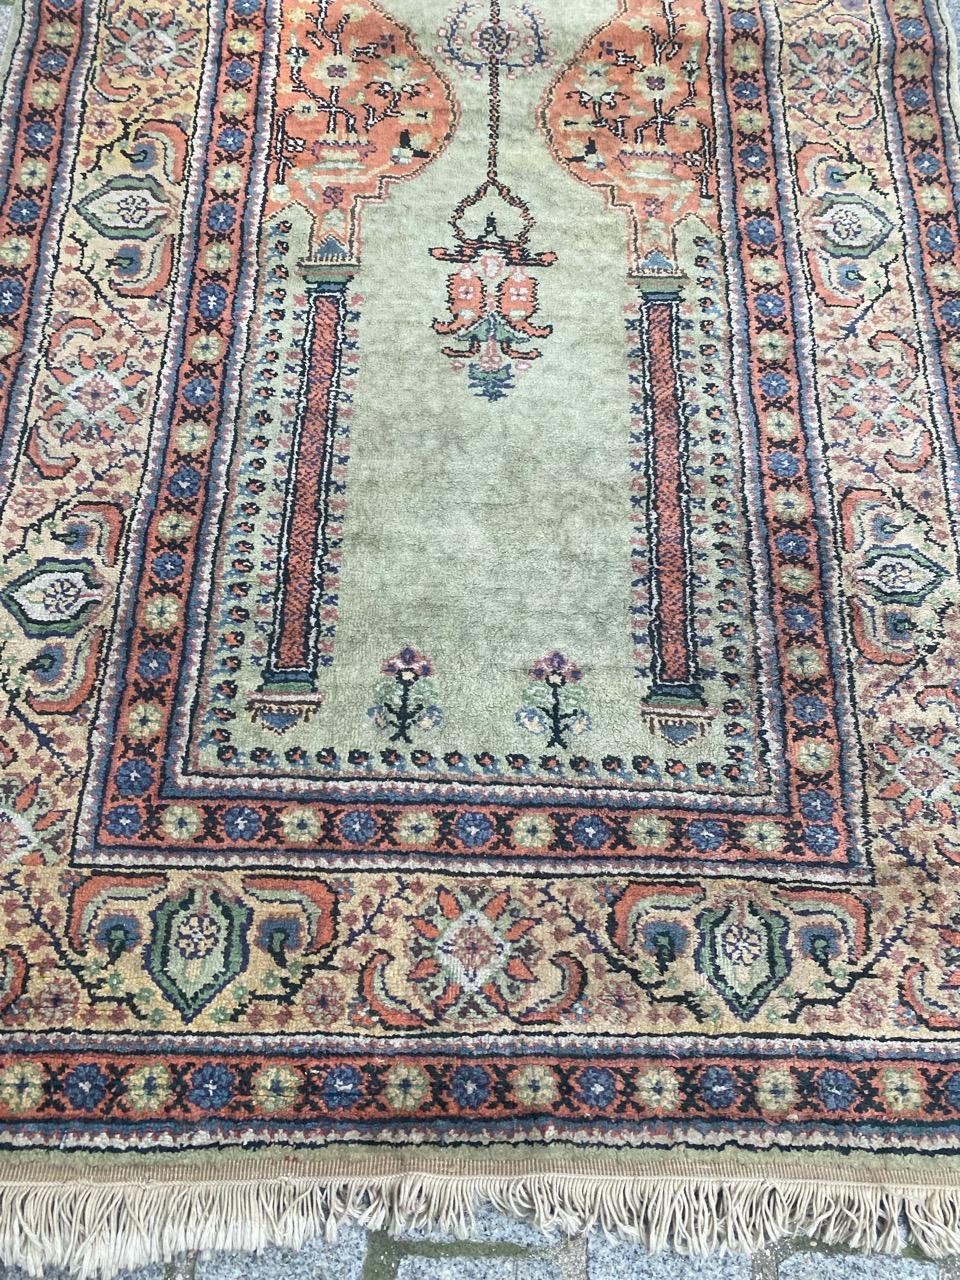 Hübscher türkischer Kayseri-Teppich aus der Mitte des Jahrhunderts mit schönem Mihrab-Muster und schönen Farben, vollständig handgeknüpft mit Seide und Baumwolle auf Baumwollbasis.

✨✨✨
